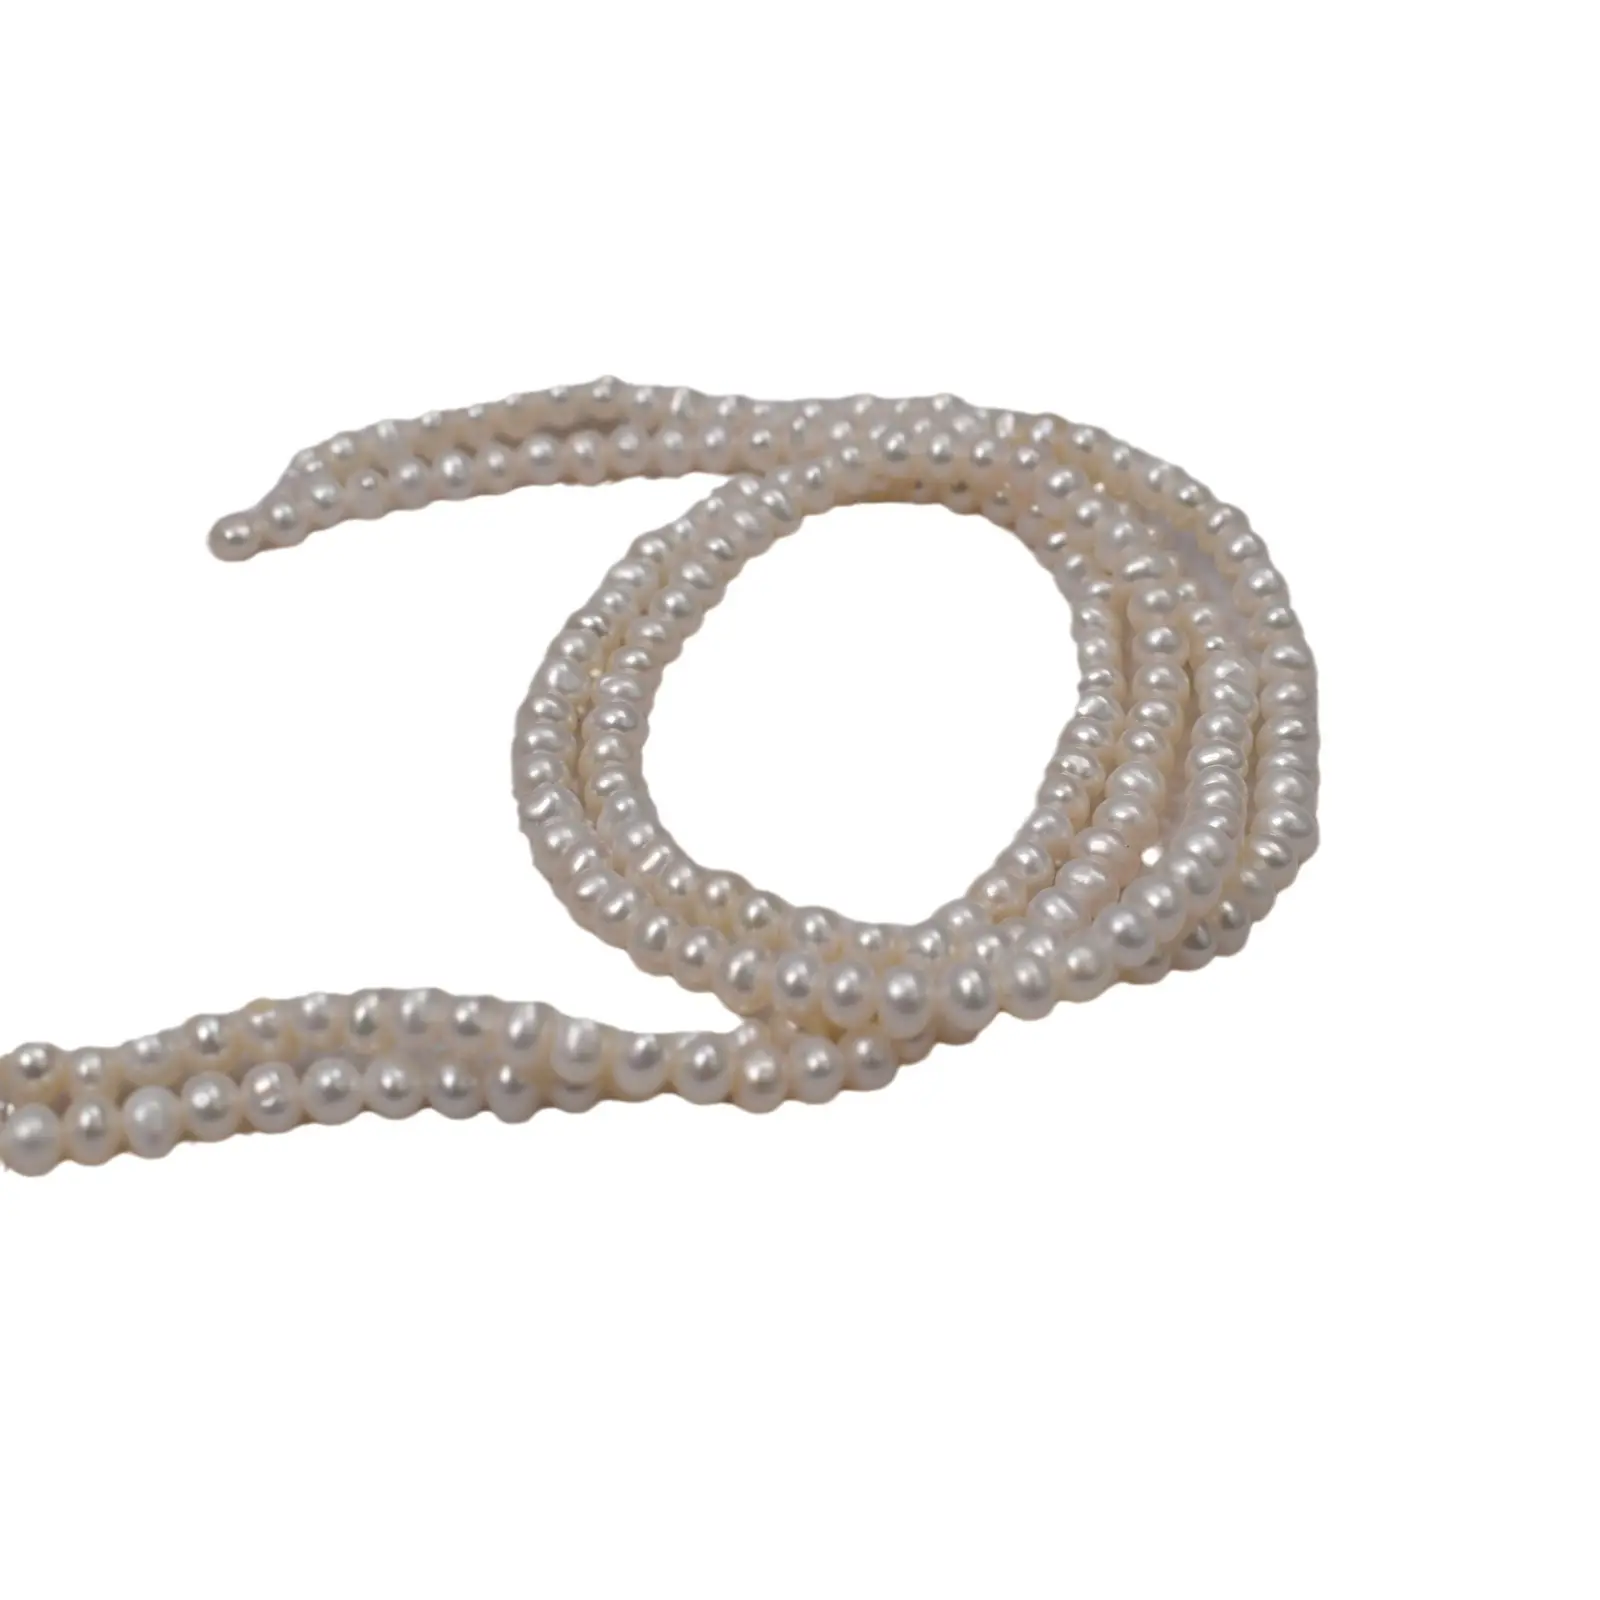 4-5mm naturale filo di perle sciolte d'acqua dolce bianco rosa viola Baby Akoya catena di perle per la creazione di gioielli